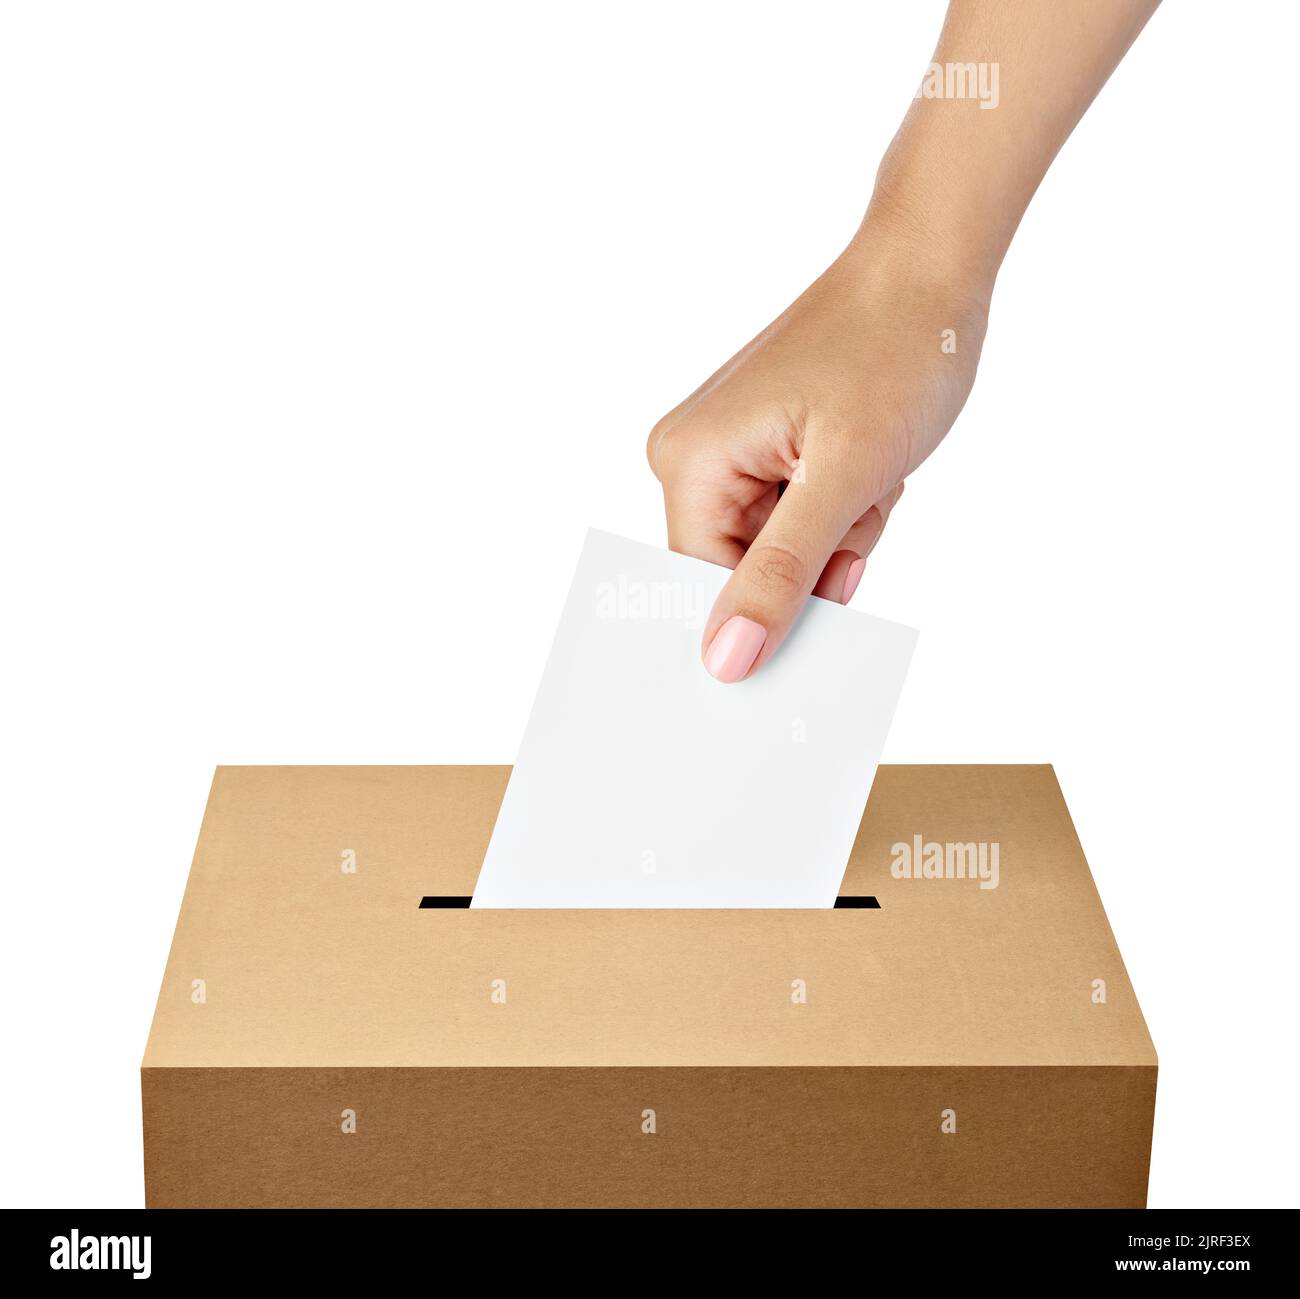 bulletin de vote vote vote élection référendum politique élection femme femme démocratie main électeur politique Banque D'Images